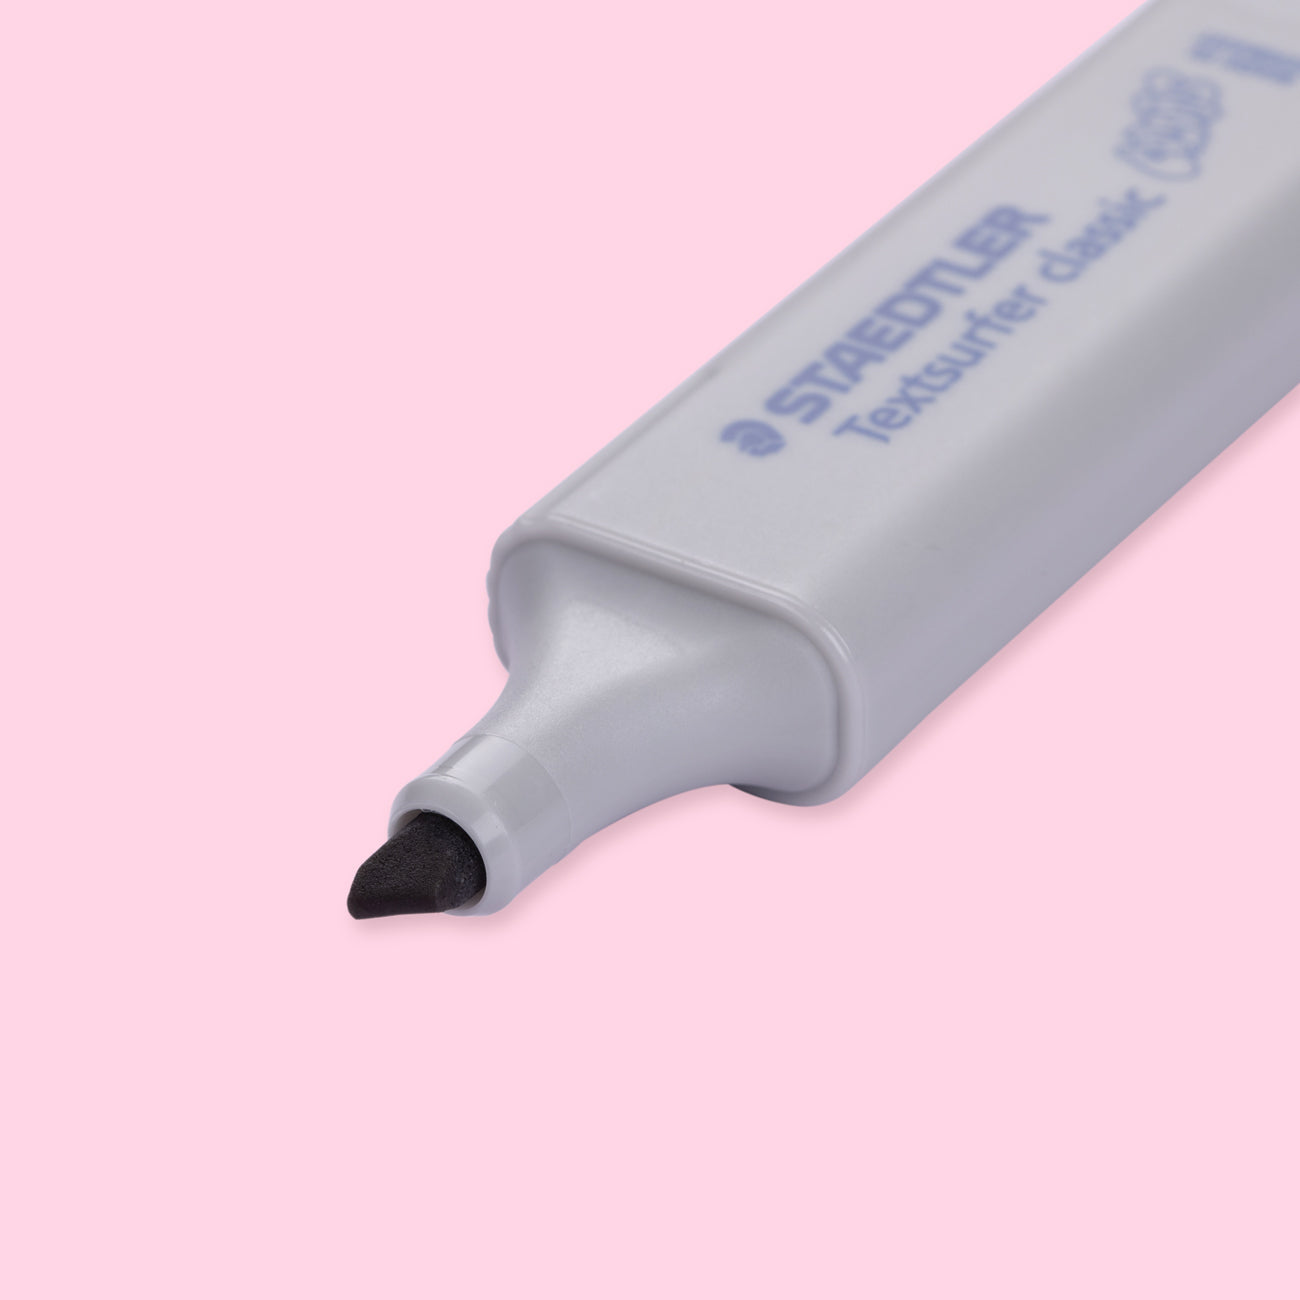 Staedtler Textsurfer Classic Highlighter Pen - Light Gray